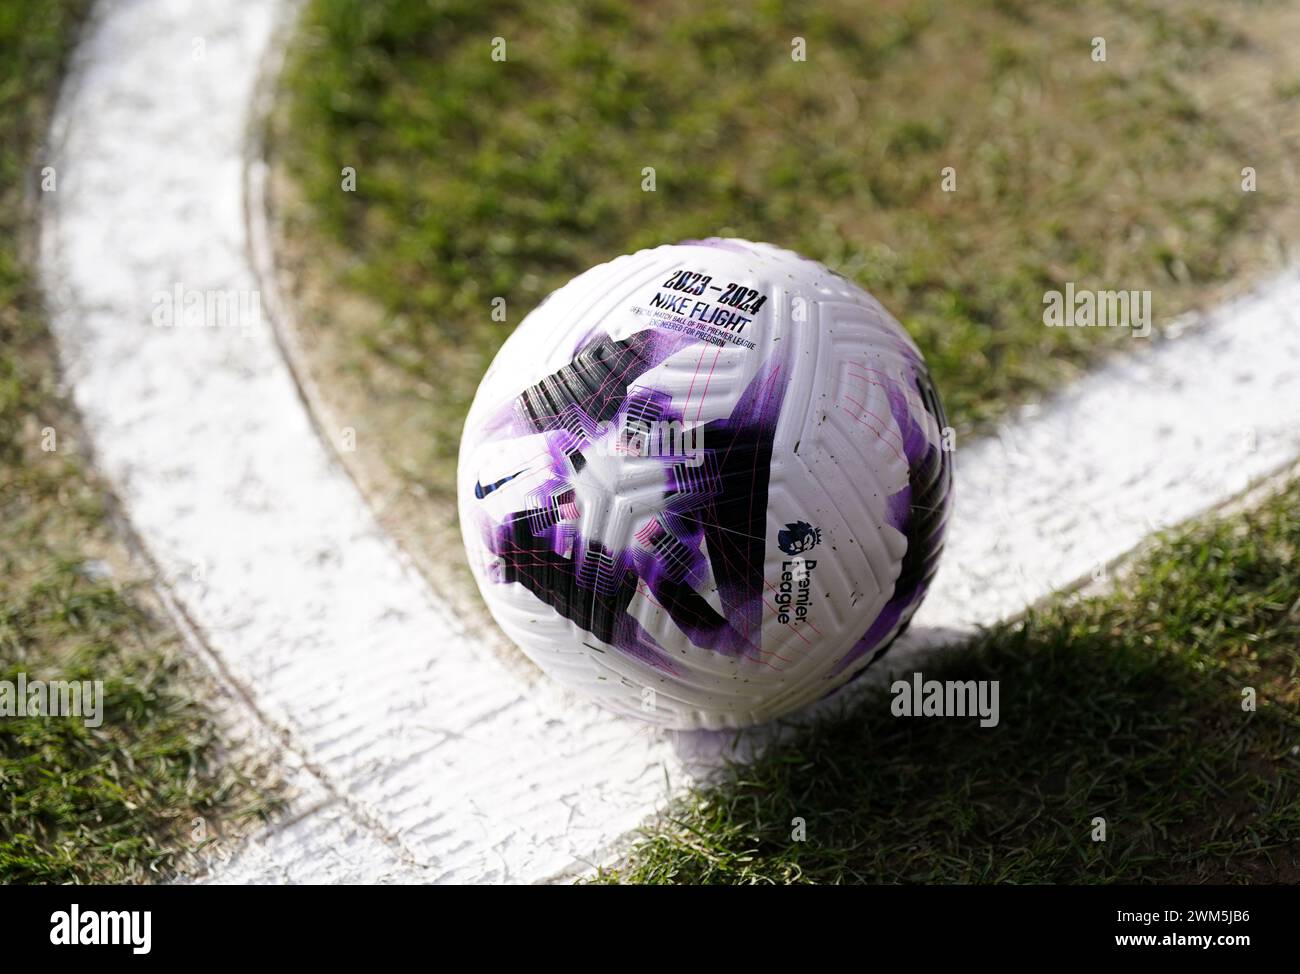 Eine allgemeine Ansicht eines Nike Flight Sommerspielballs vor dem Spiel der Premier League in Selhurst Park, London. Bilddatum: Samstag, 24. Februar 2024. Stockfoto